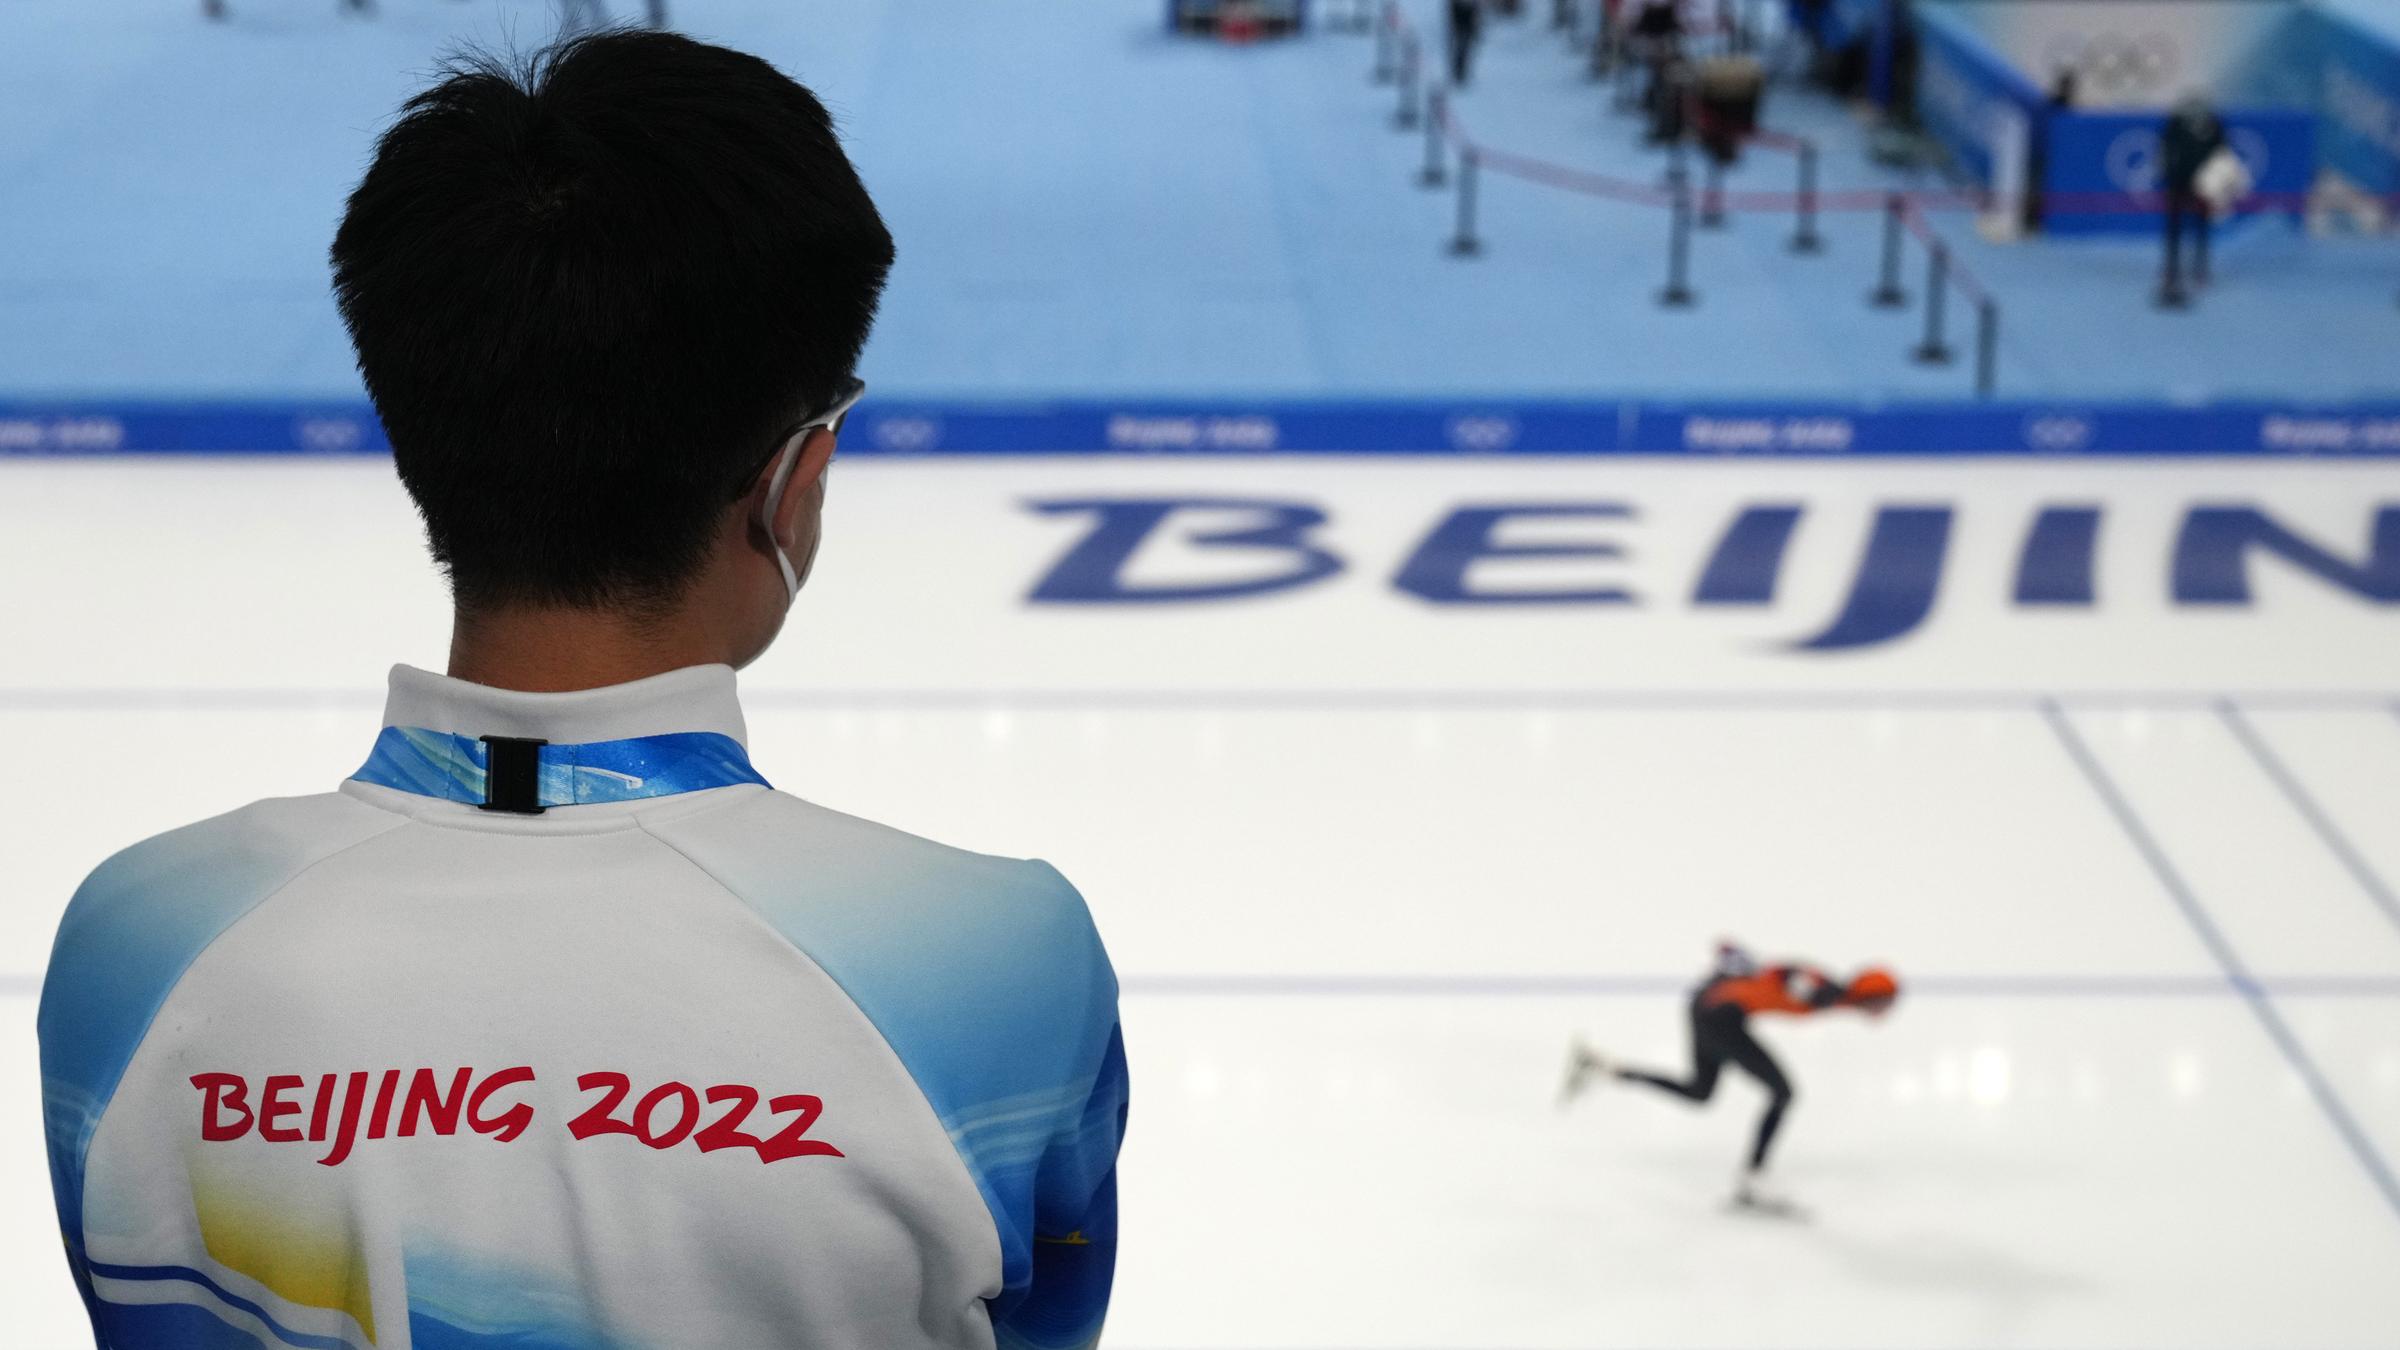 Ein Athlet nimmt an einem Eisschnelllauf-Testrennen im Vorfeld der Olympischen Winterspiele 2022 in Peking im National Speed Skating .Oval in Peking, China, teil